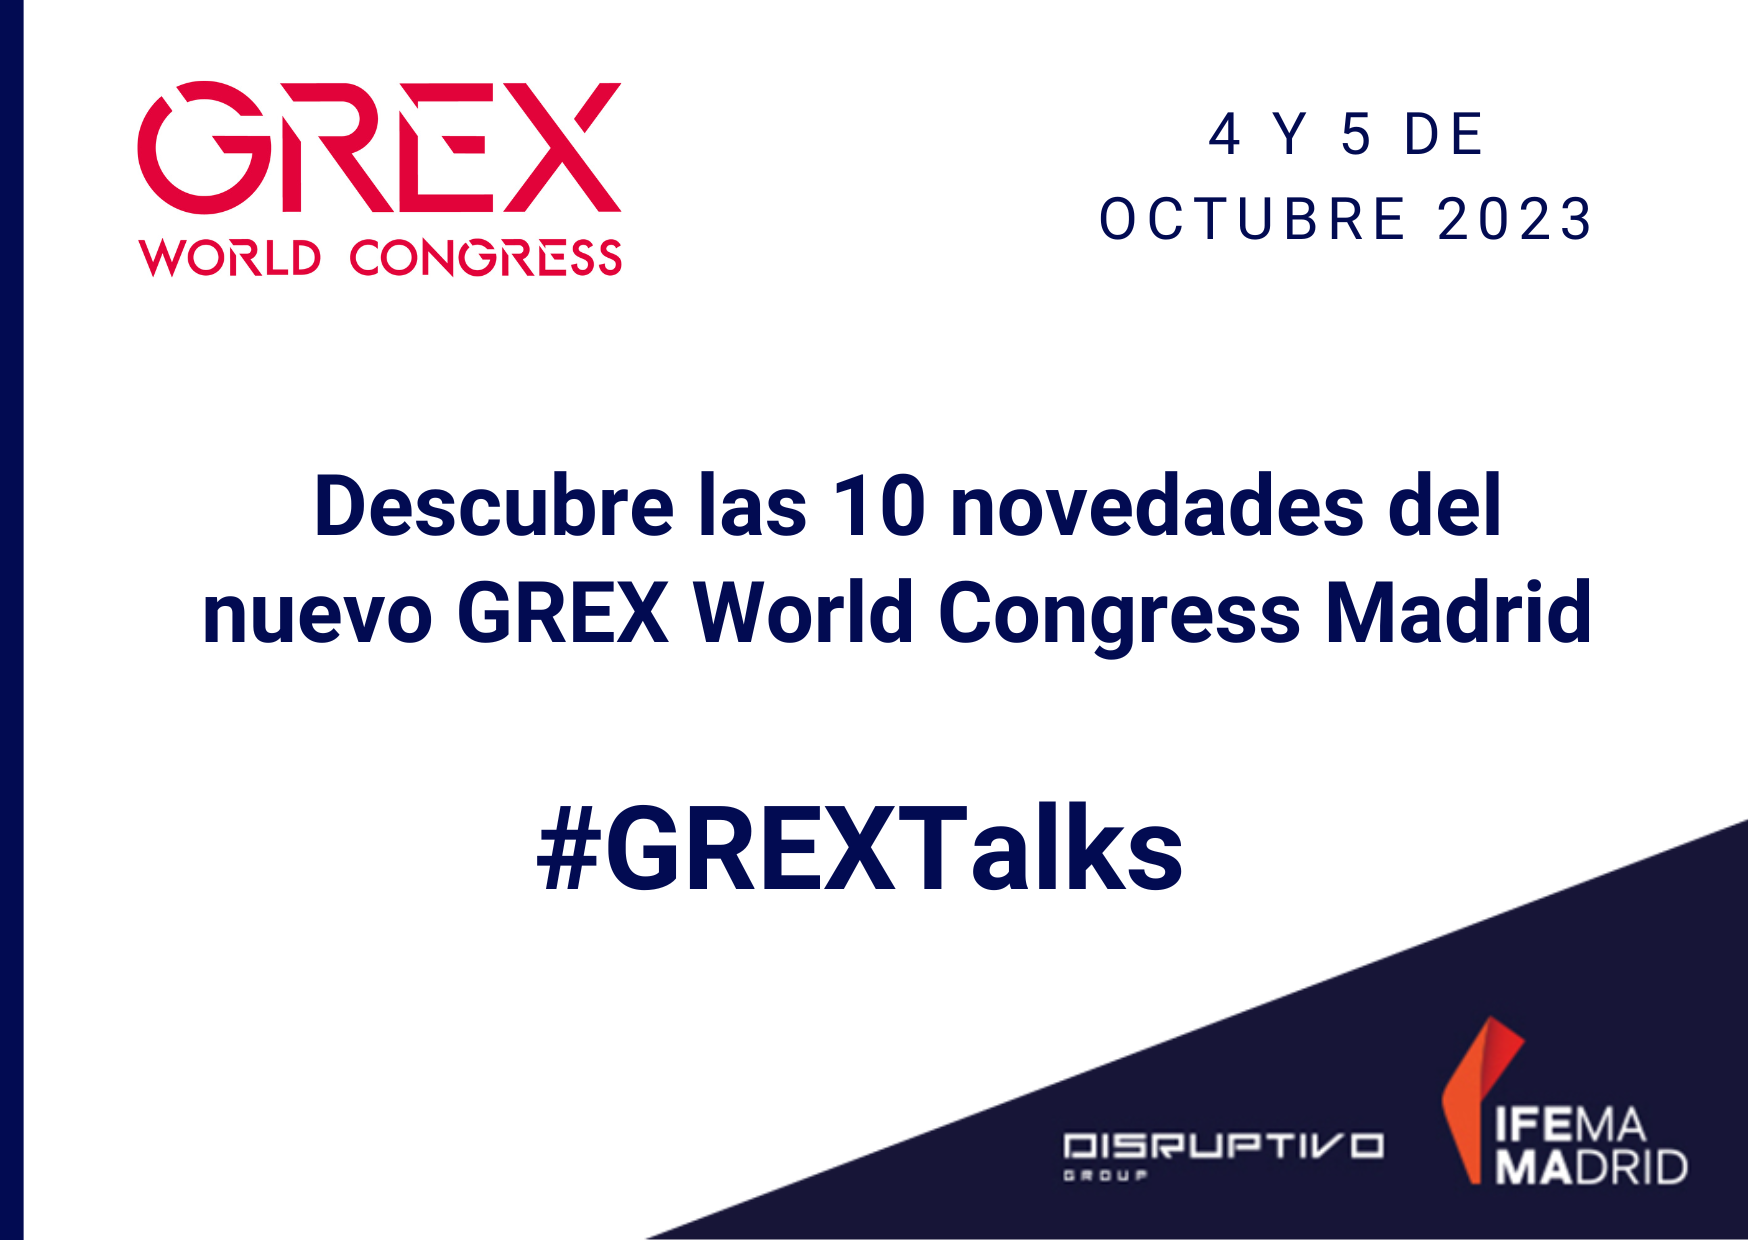 #GREXTalks: Todo sobre la nueva gran cita GREX World Congress (4 y 5 octubre)